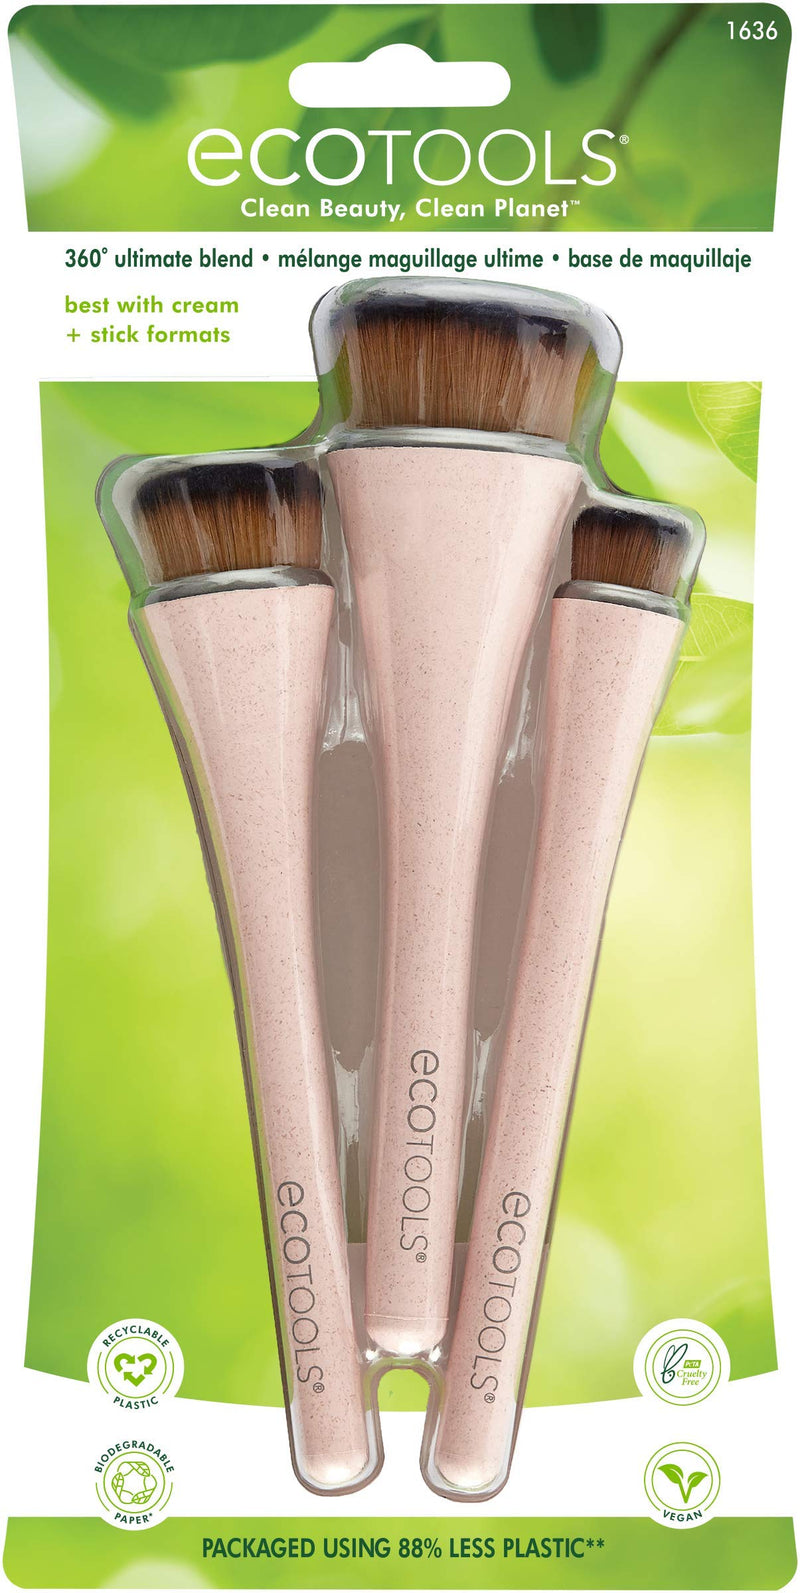 [Australia] - EcoTools 360 Ultimate Blend Makeup Brushes, For Cream & Stick Makeup, Foundation, Concealer, Highlighter, Blush Set of 3 